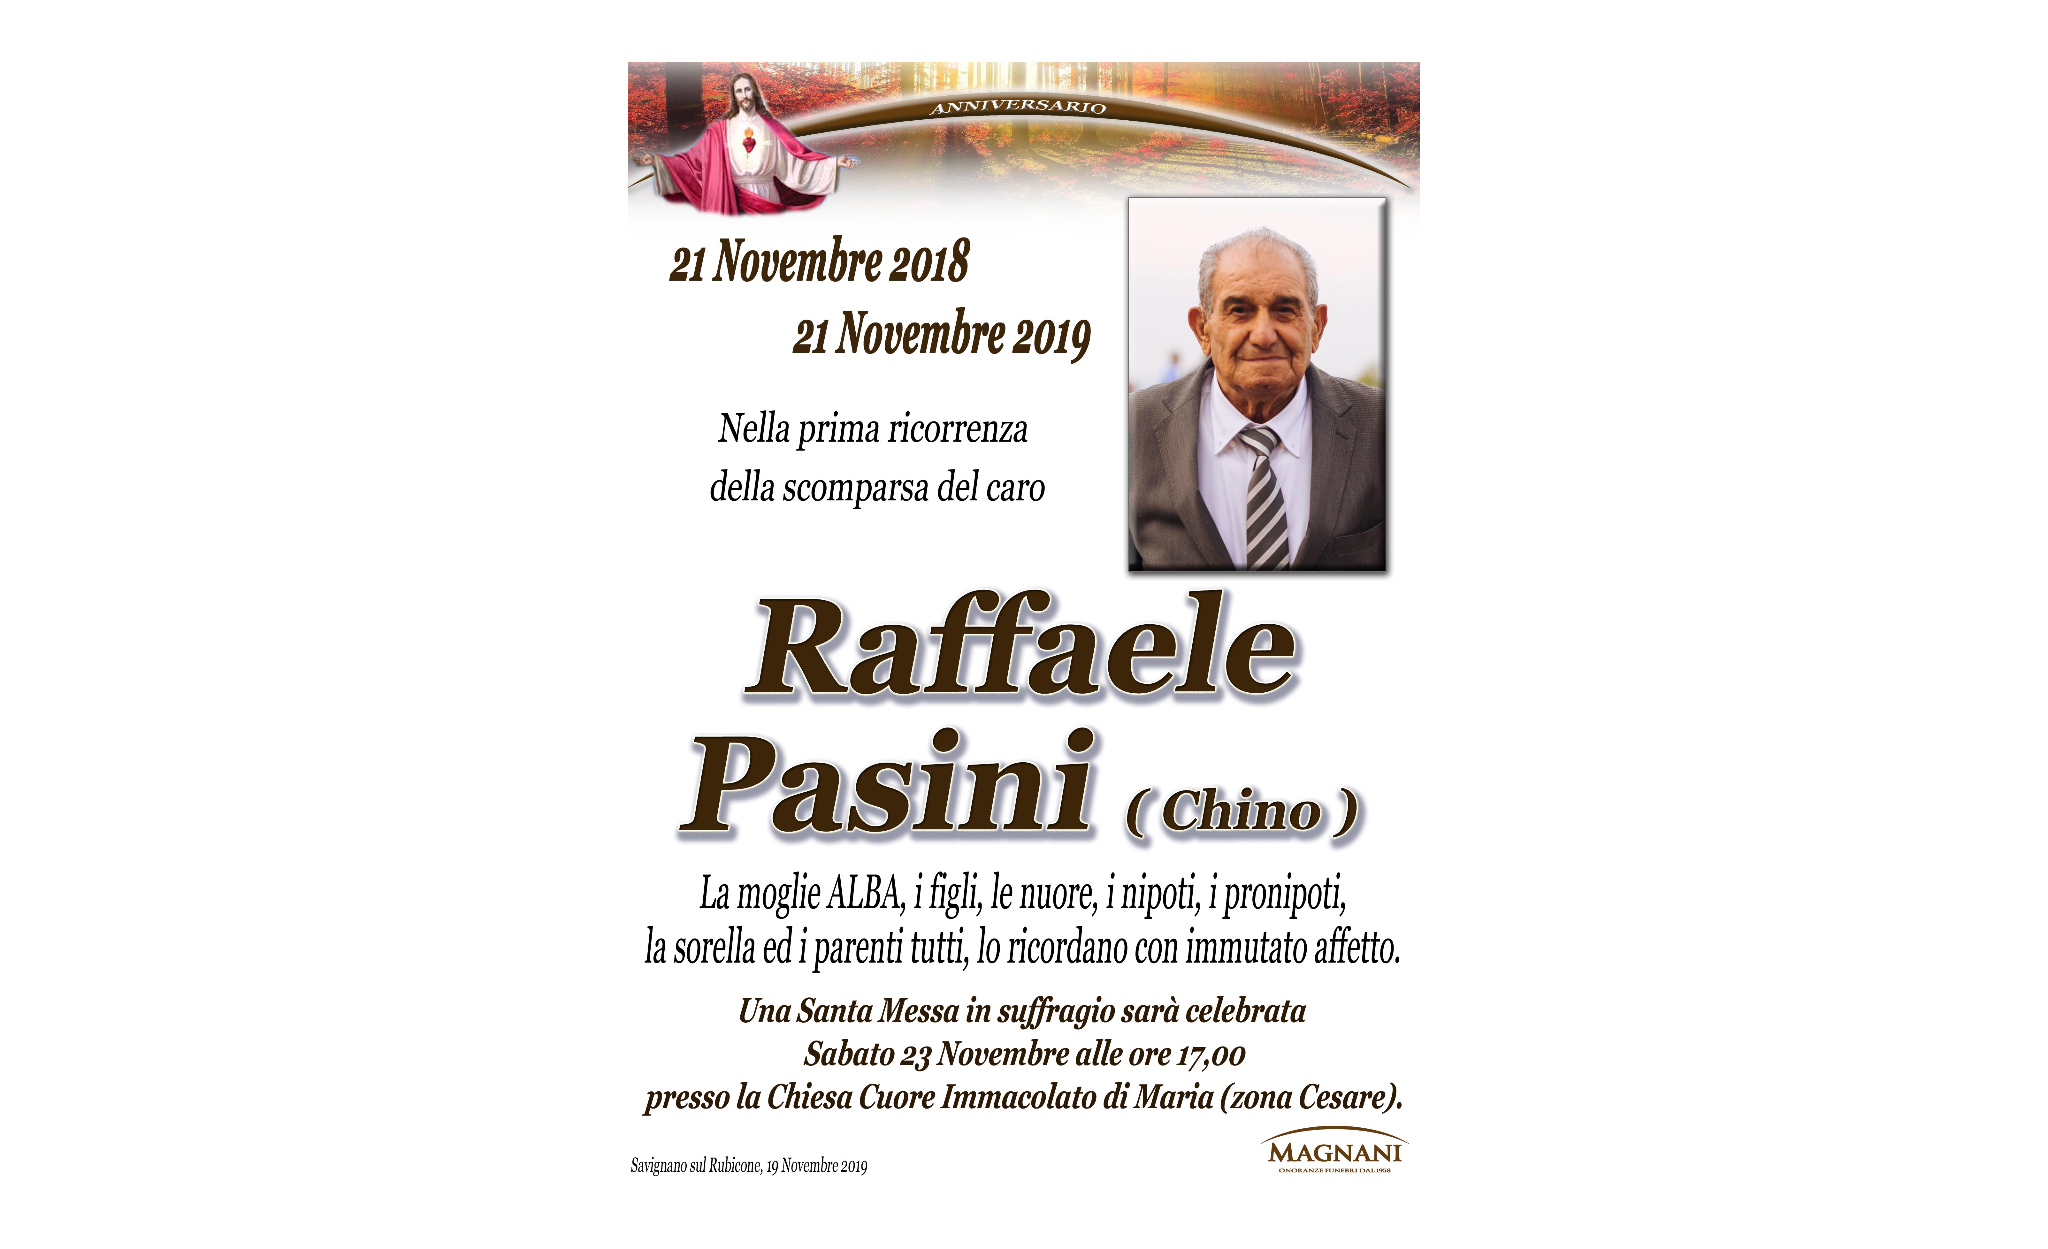 Raffaele Pasini